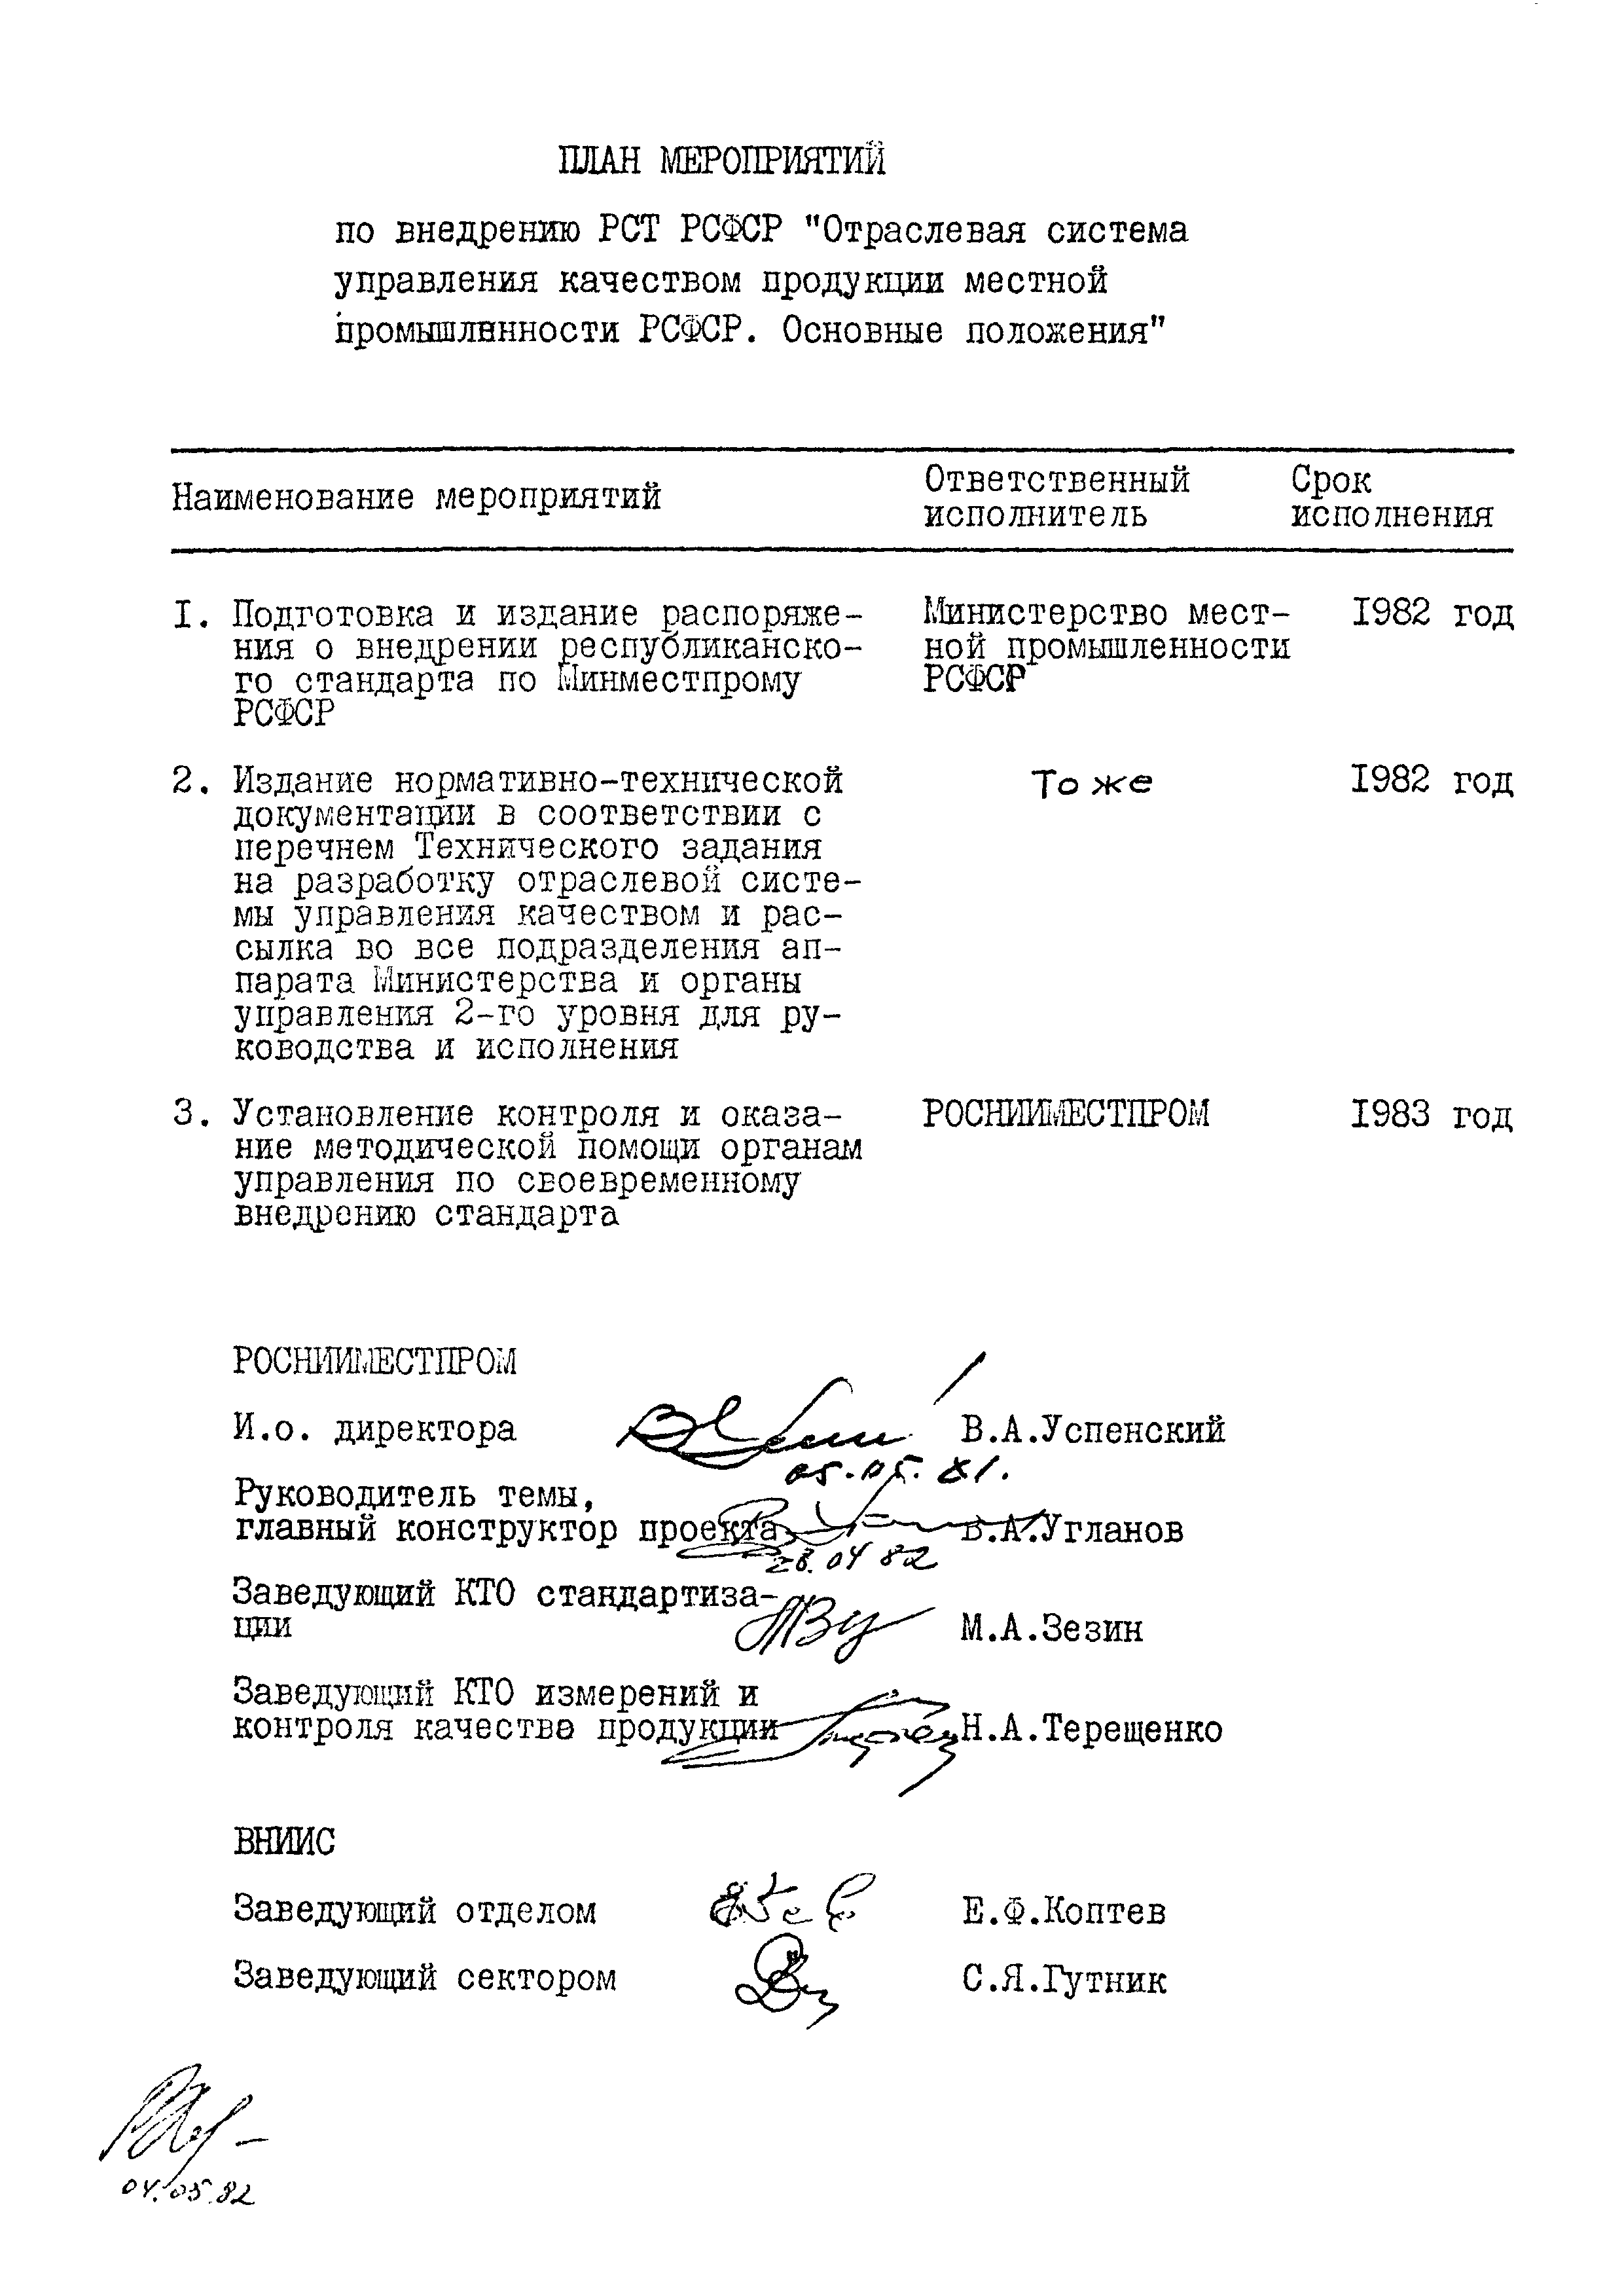 РСТ РСФСР 690-83